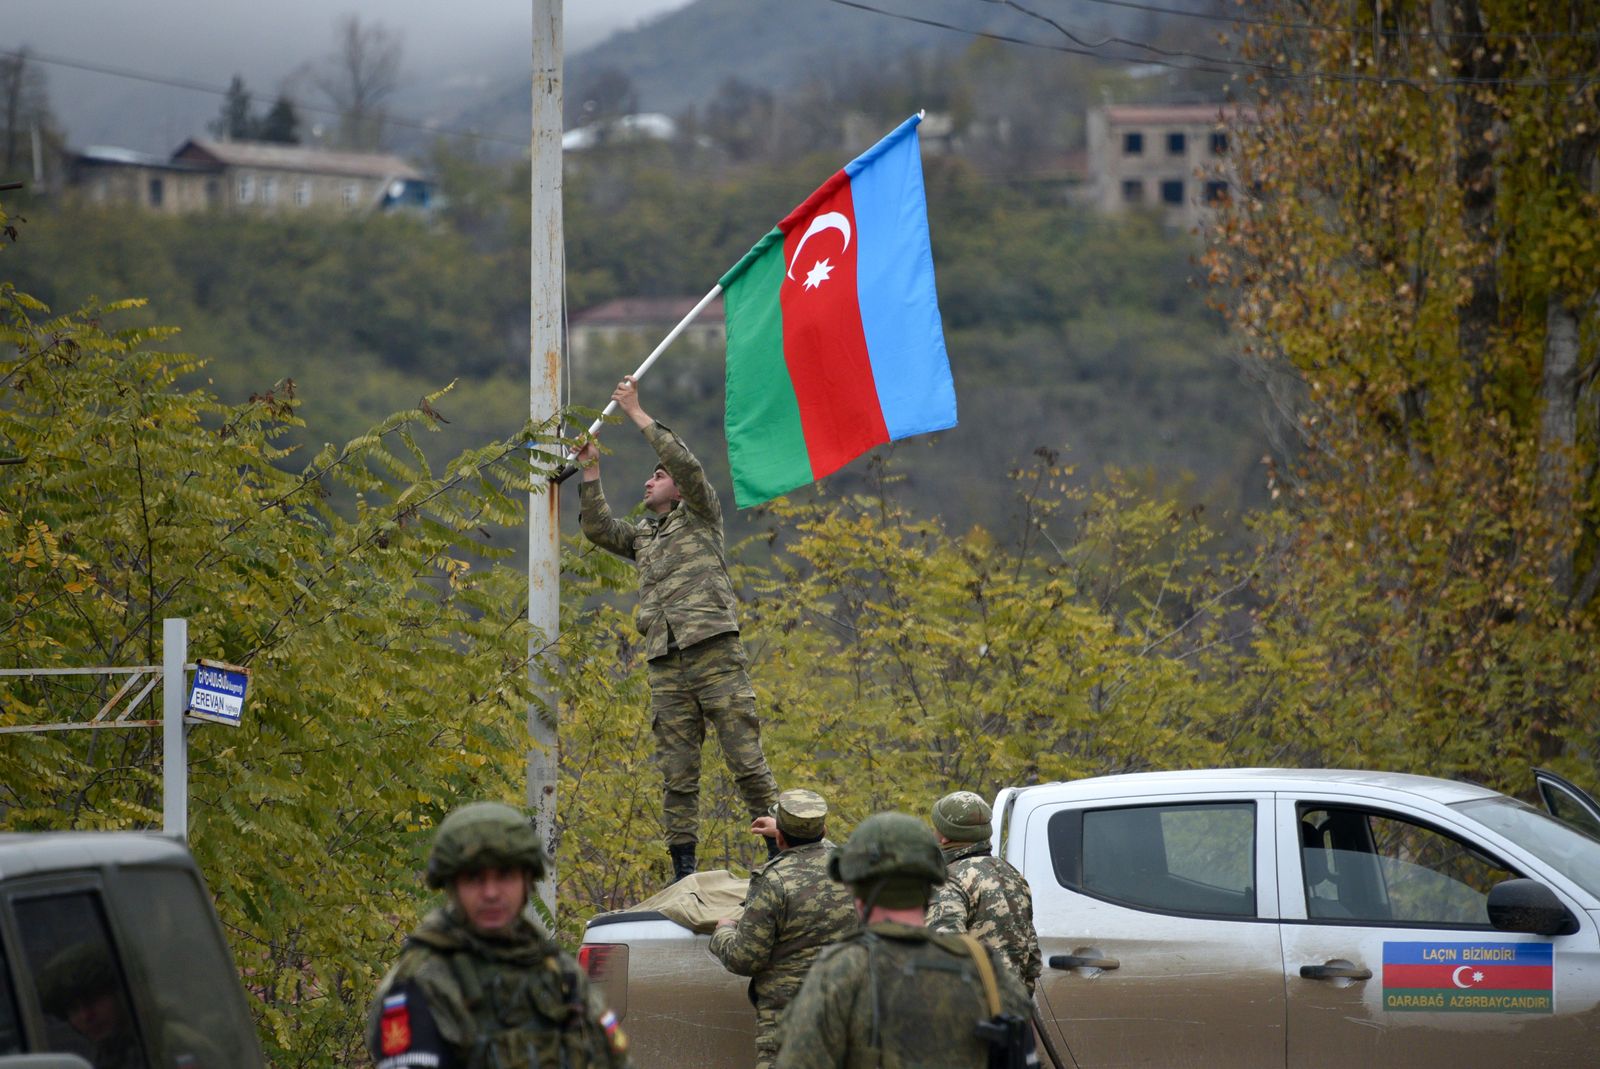 جندي أذربيجاني يثبت علم بلاده على عمود إنارة في بلدة لاتشين بعد دخولها في 1 ديسمبر 2020 بموجب اتفاق السلام  - AFP